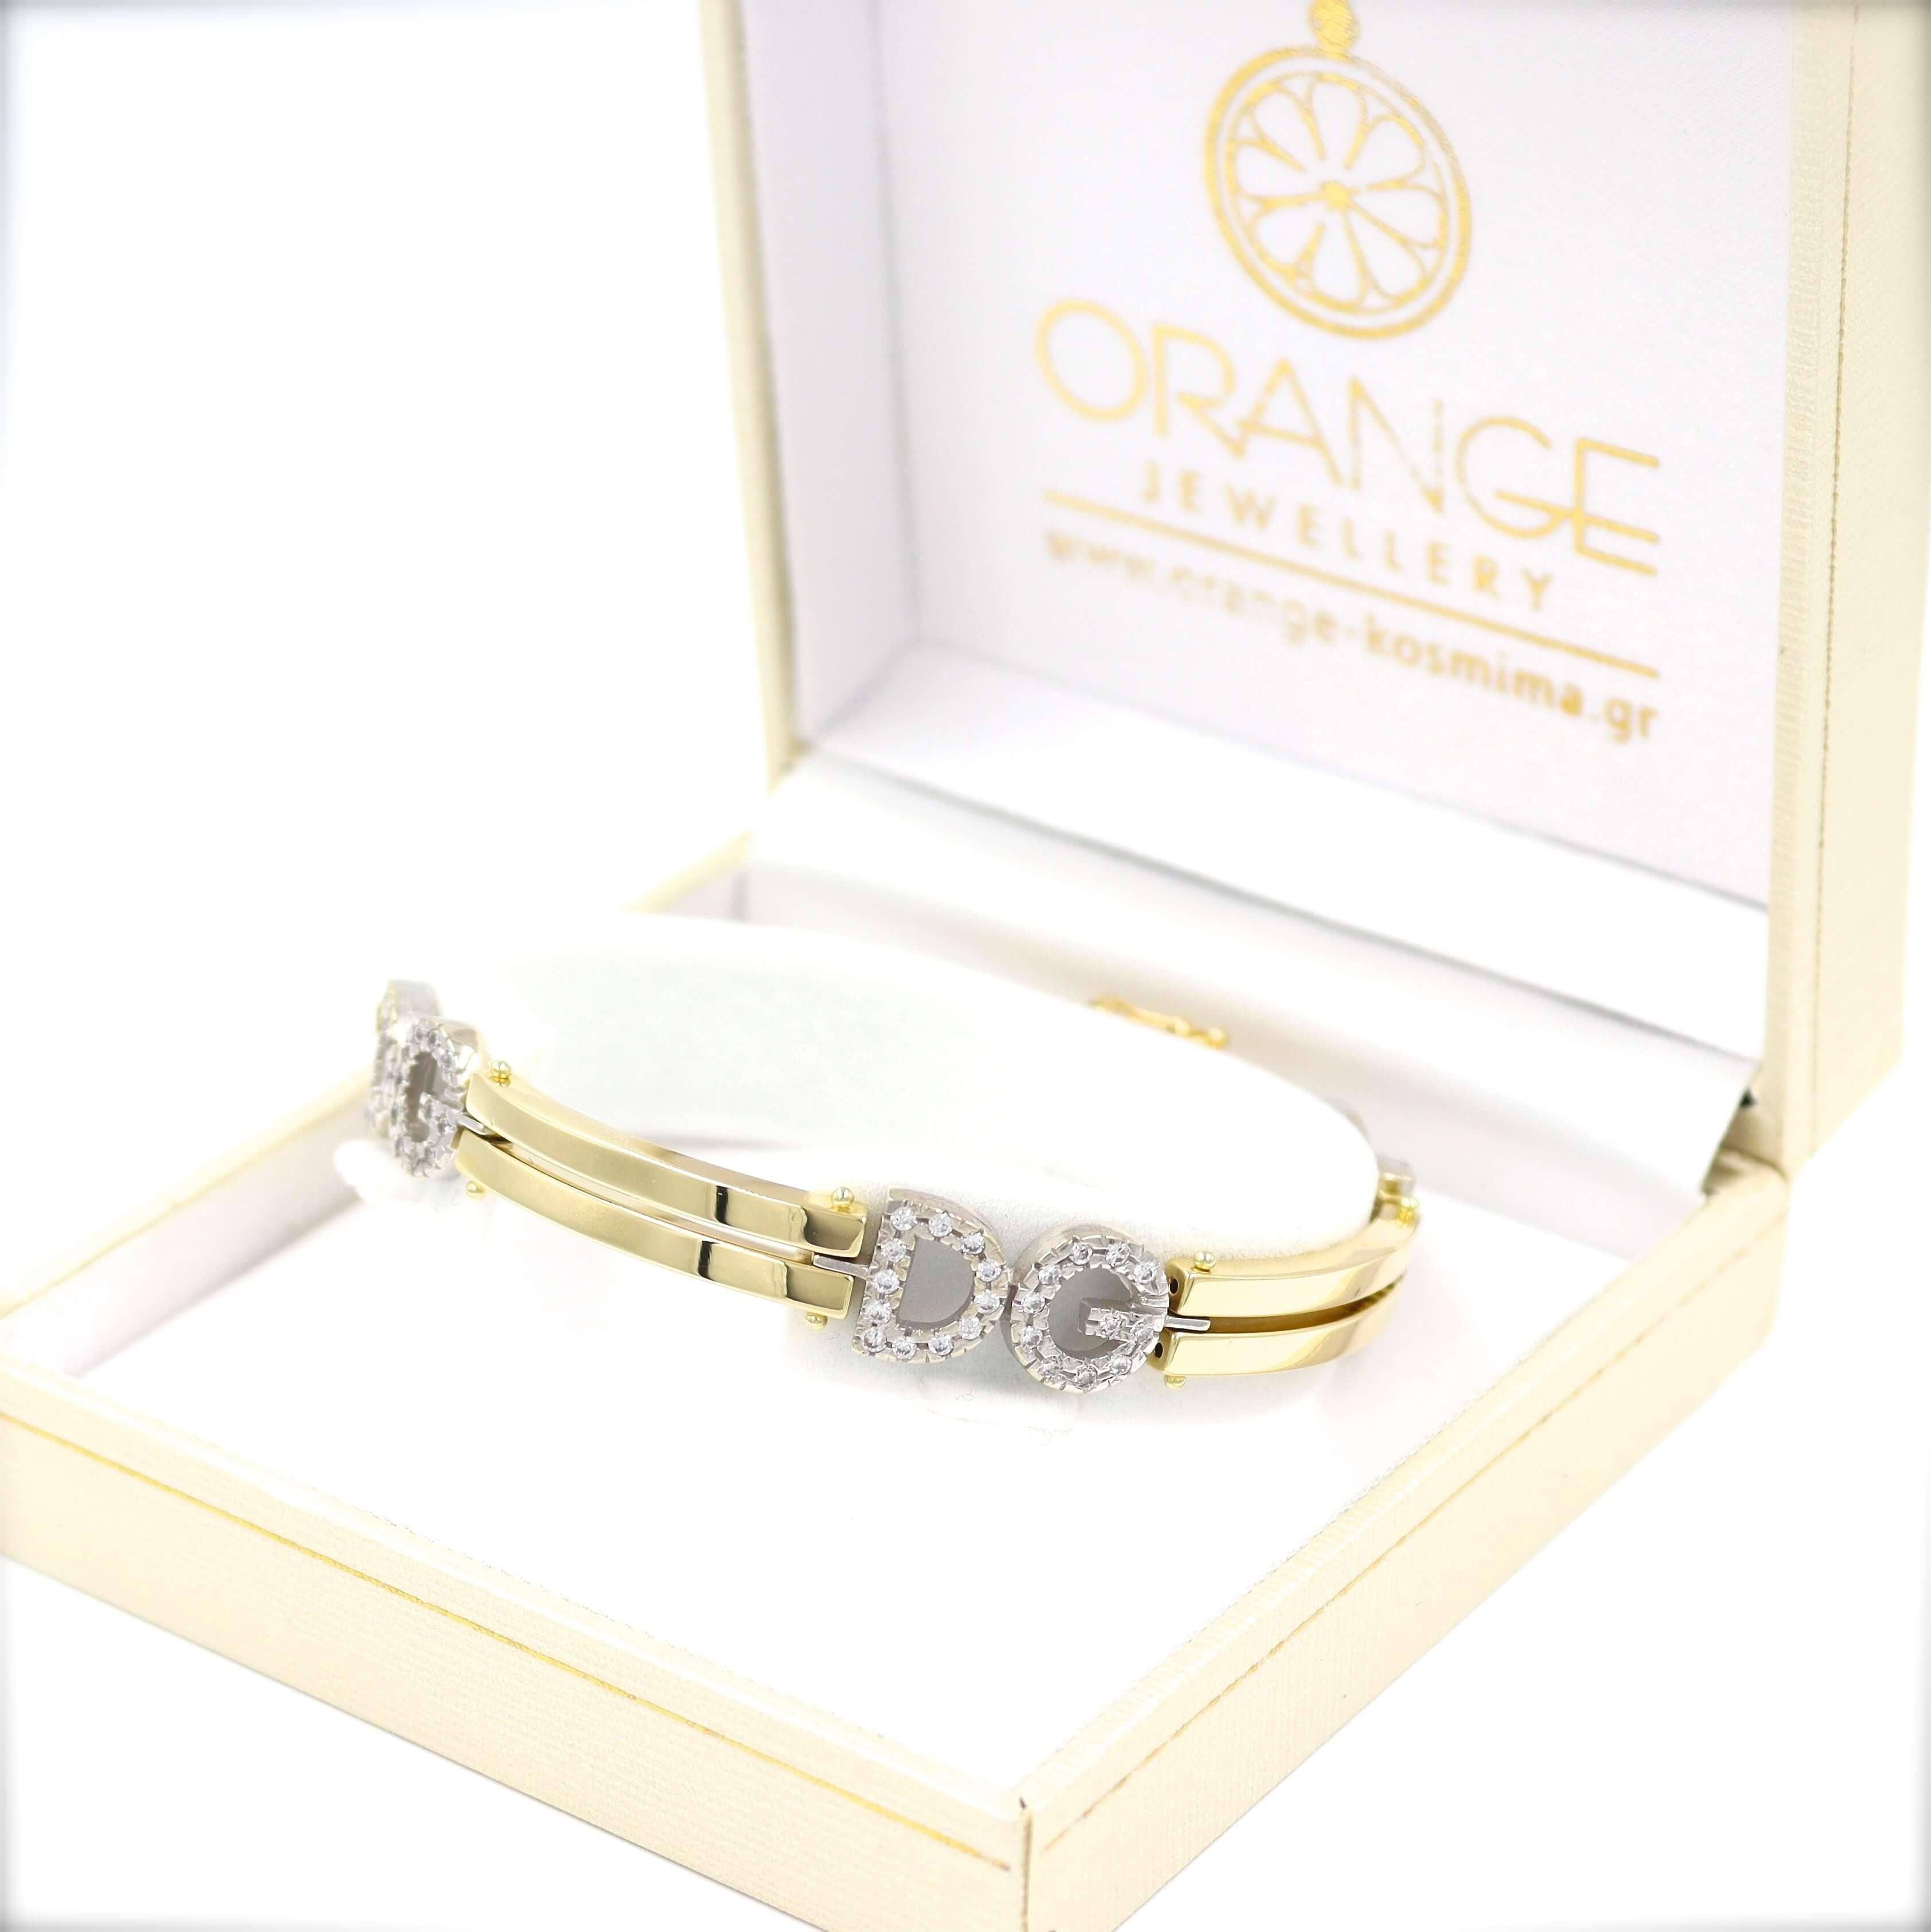 Χρυσή χειροπέδα Dolce & Gabbana 18 καρατίων με λευκές πέτρες